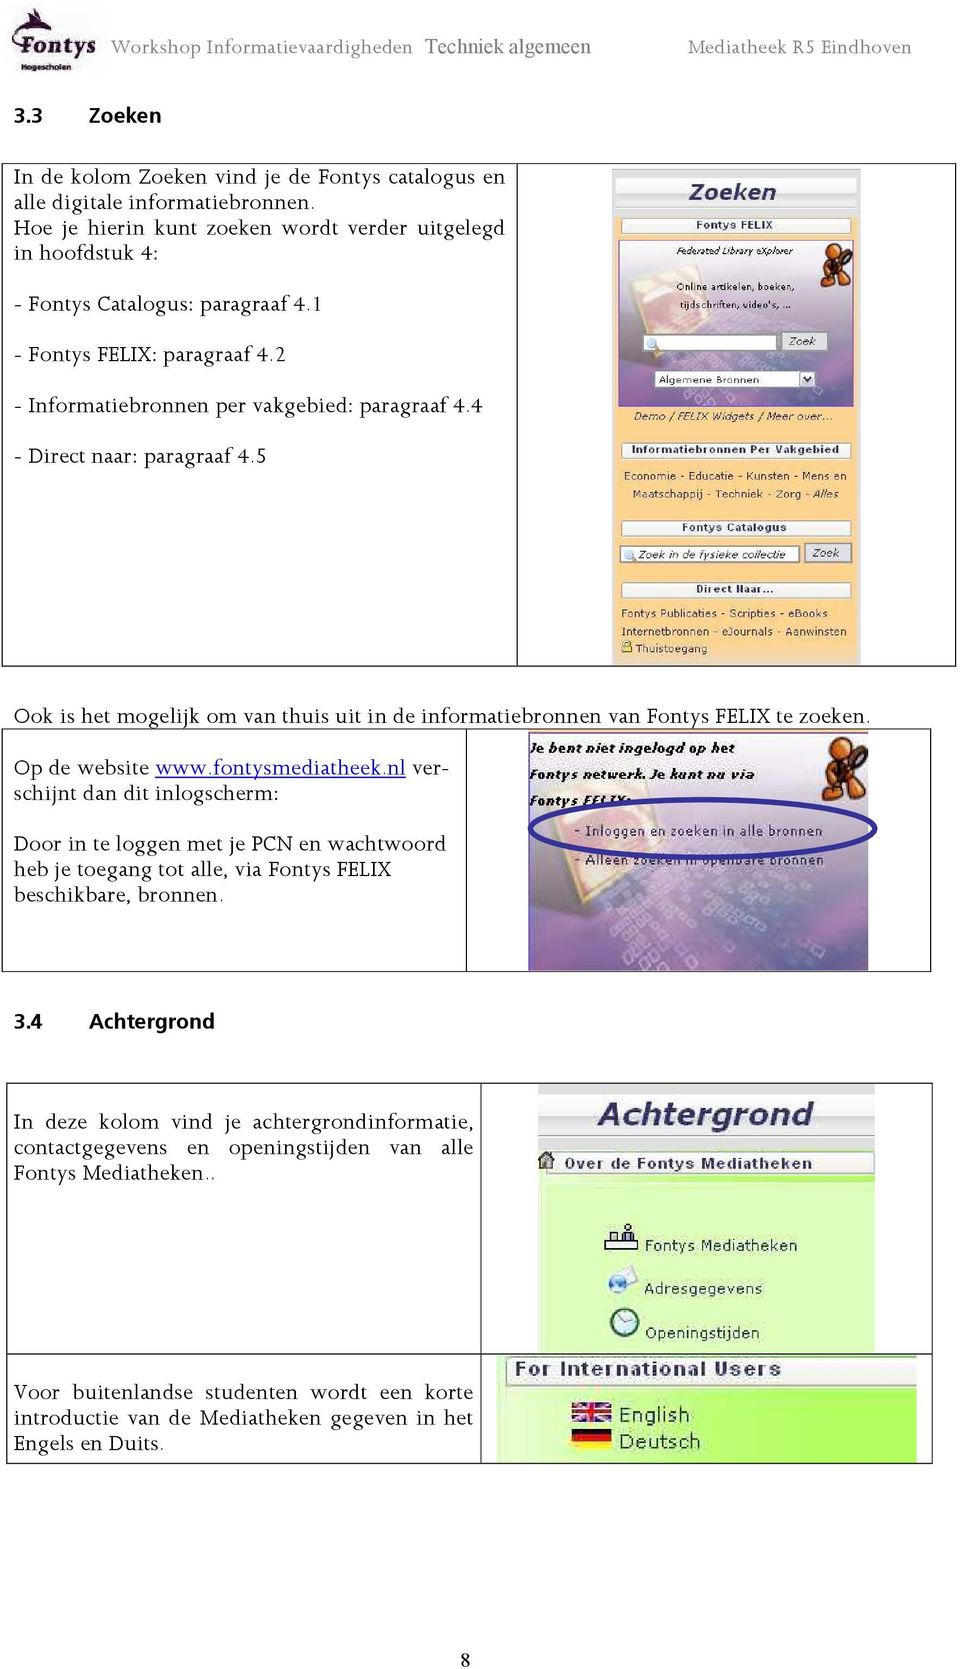 Op de website www.fontysmediatheek.nl verschijnt dan dit inlogscherm: Door in te loggen met je PCN en wachtwoord heb je toegang tot alle, via Fontys FELIX beschikbare, bronnen. 3.